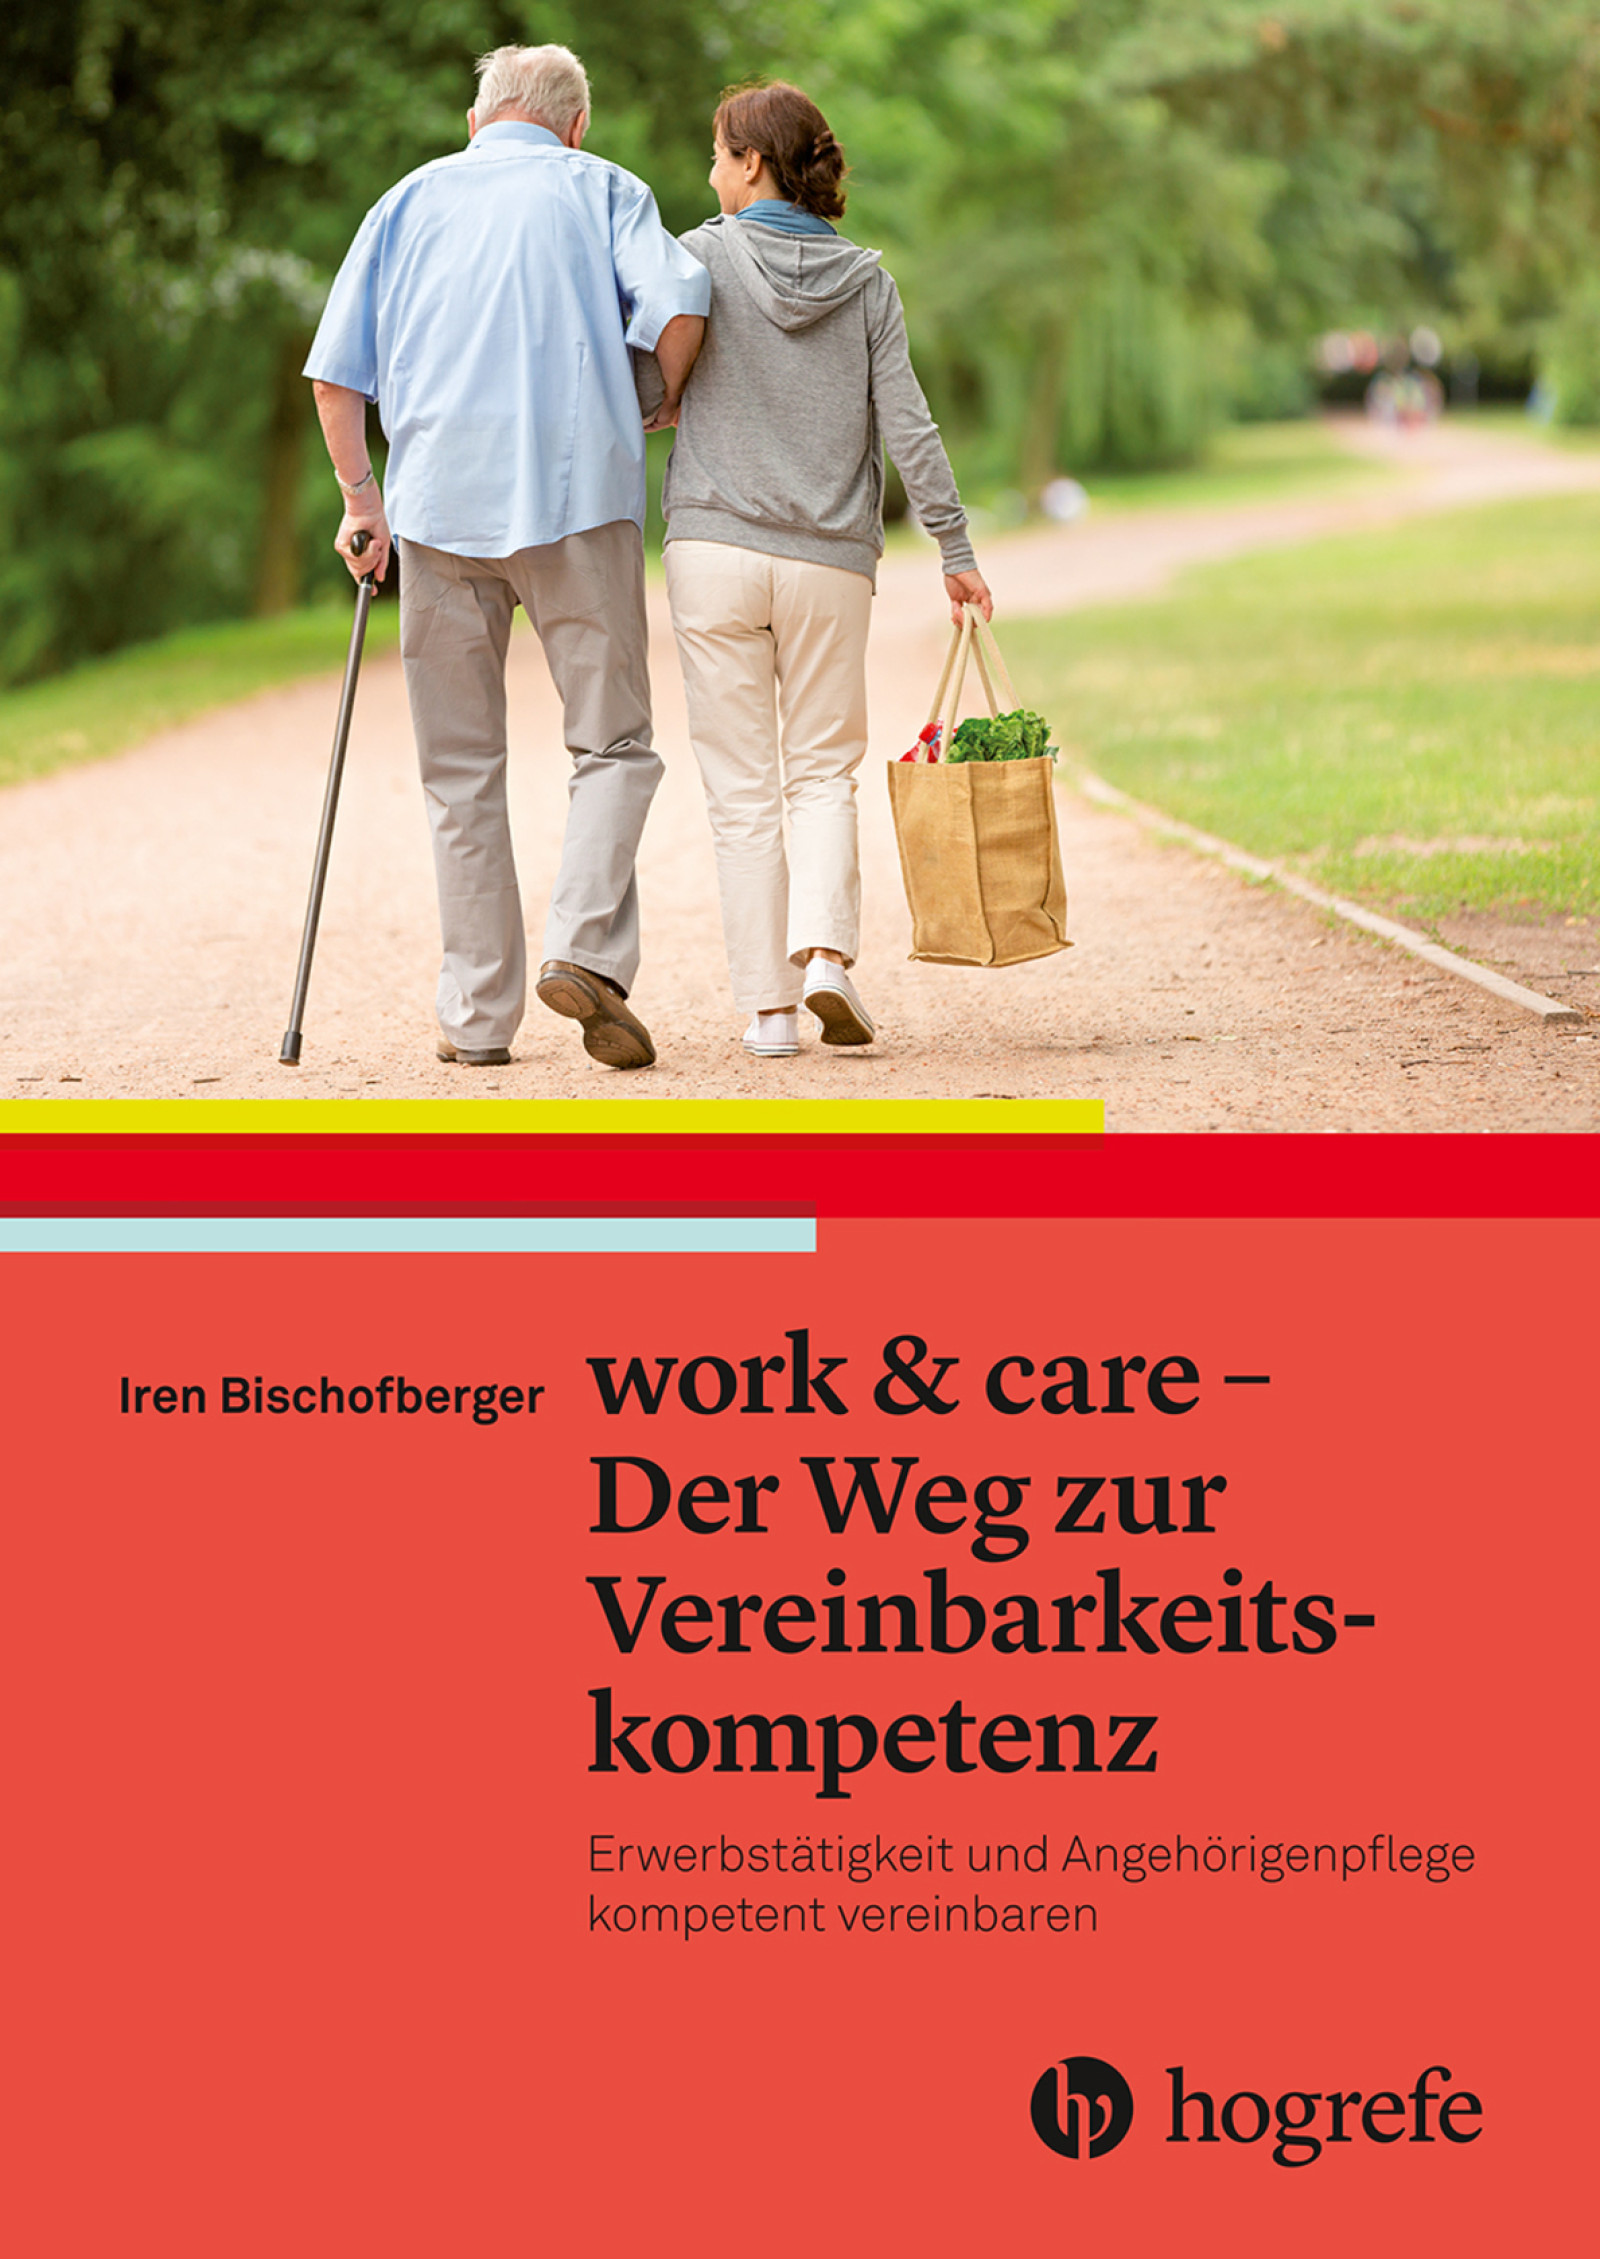 Iren Bischofberger: work & care - Der Weg zur Vereinbarkeitskompetenz